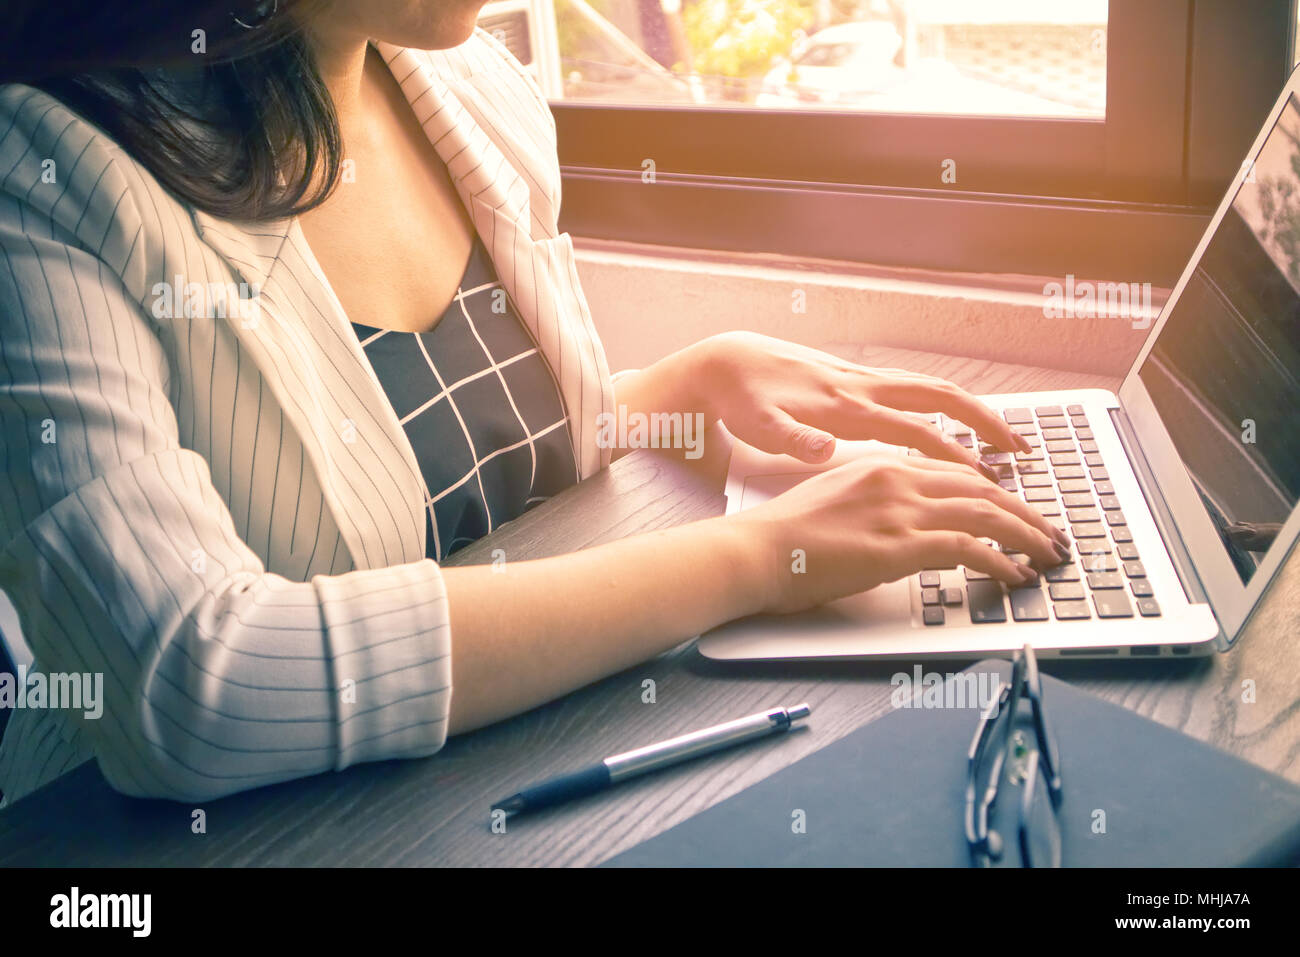 Les femmes d'affaires et sur les ordinateurs portables de type memo stylo et livre ont et le verre sur la table en bois Banque D'Images